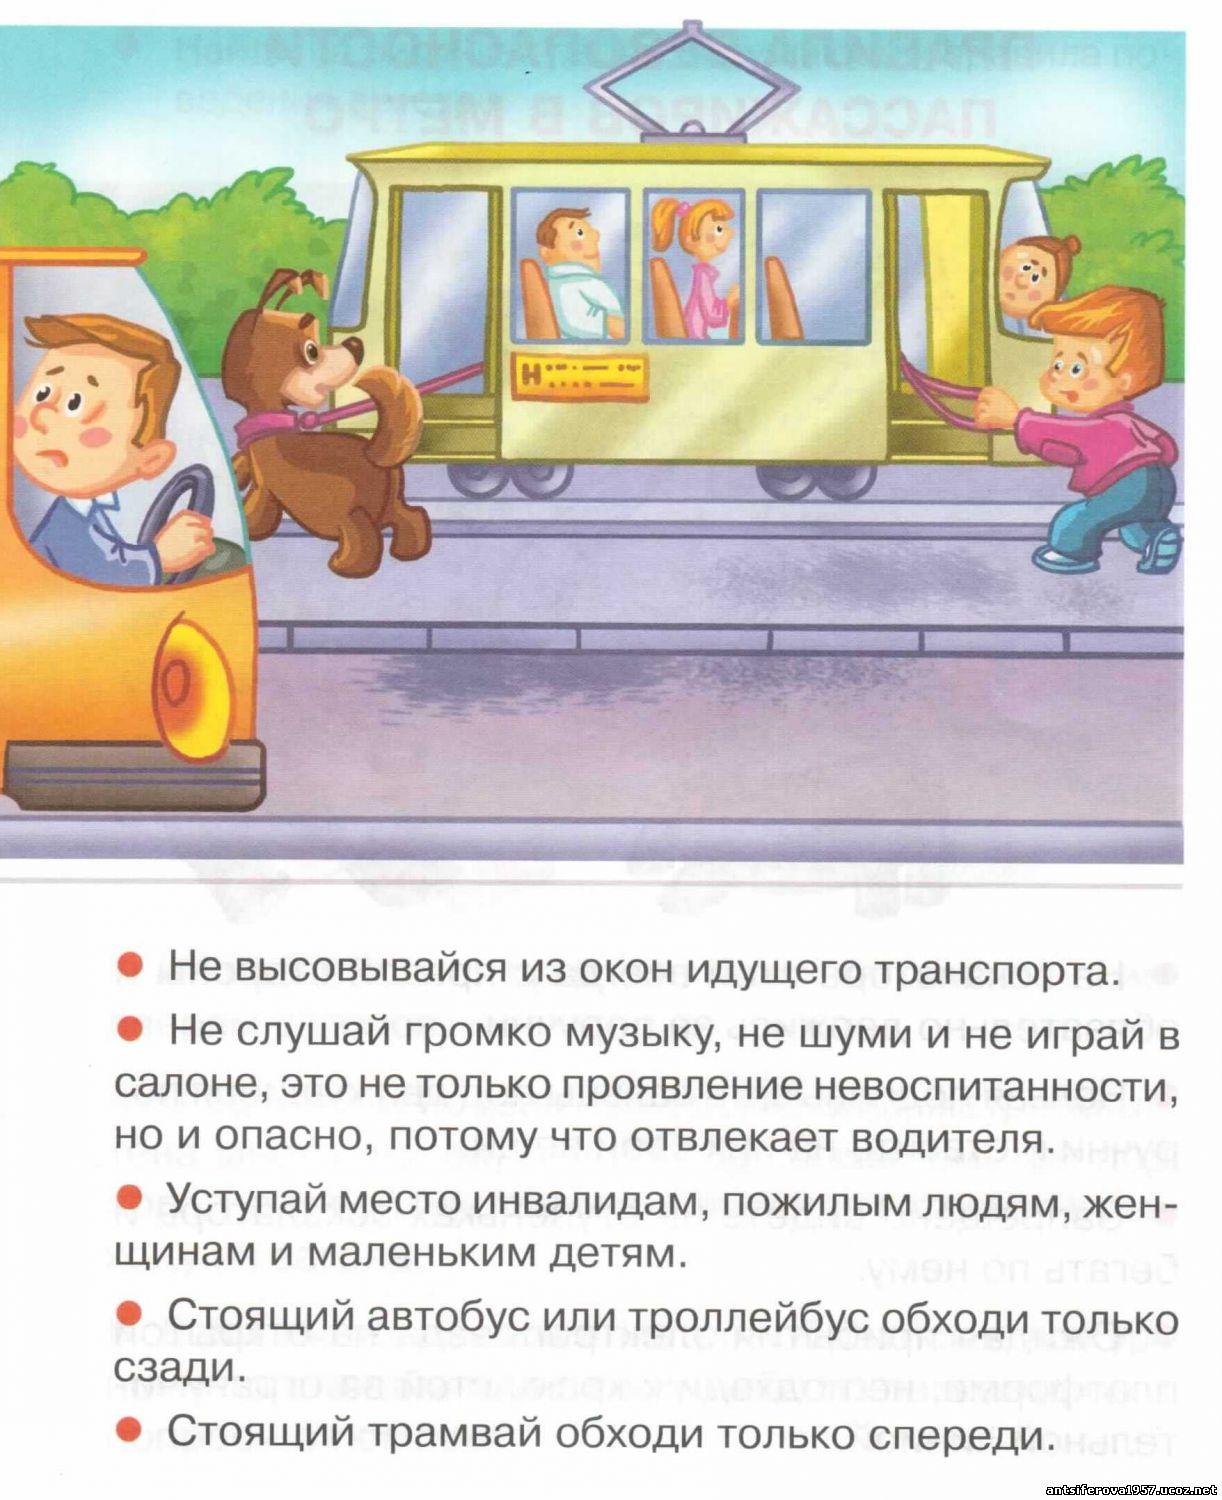 Правила безопасности поведения пассажиров